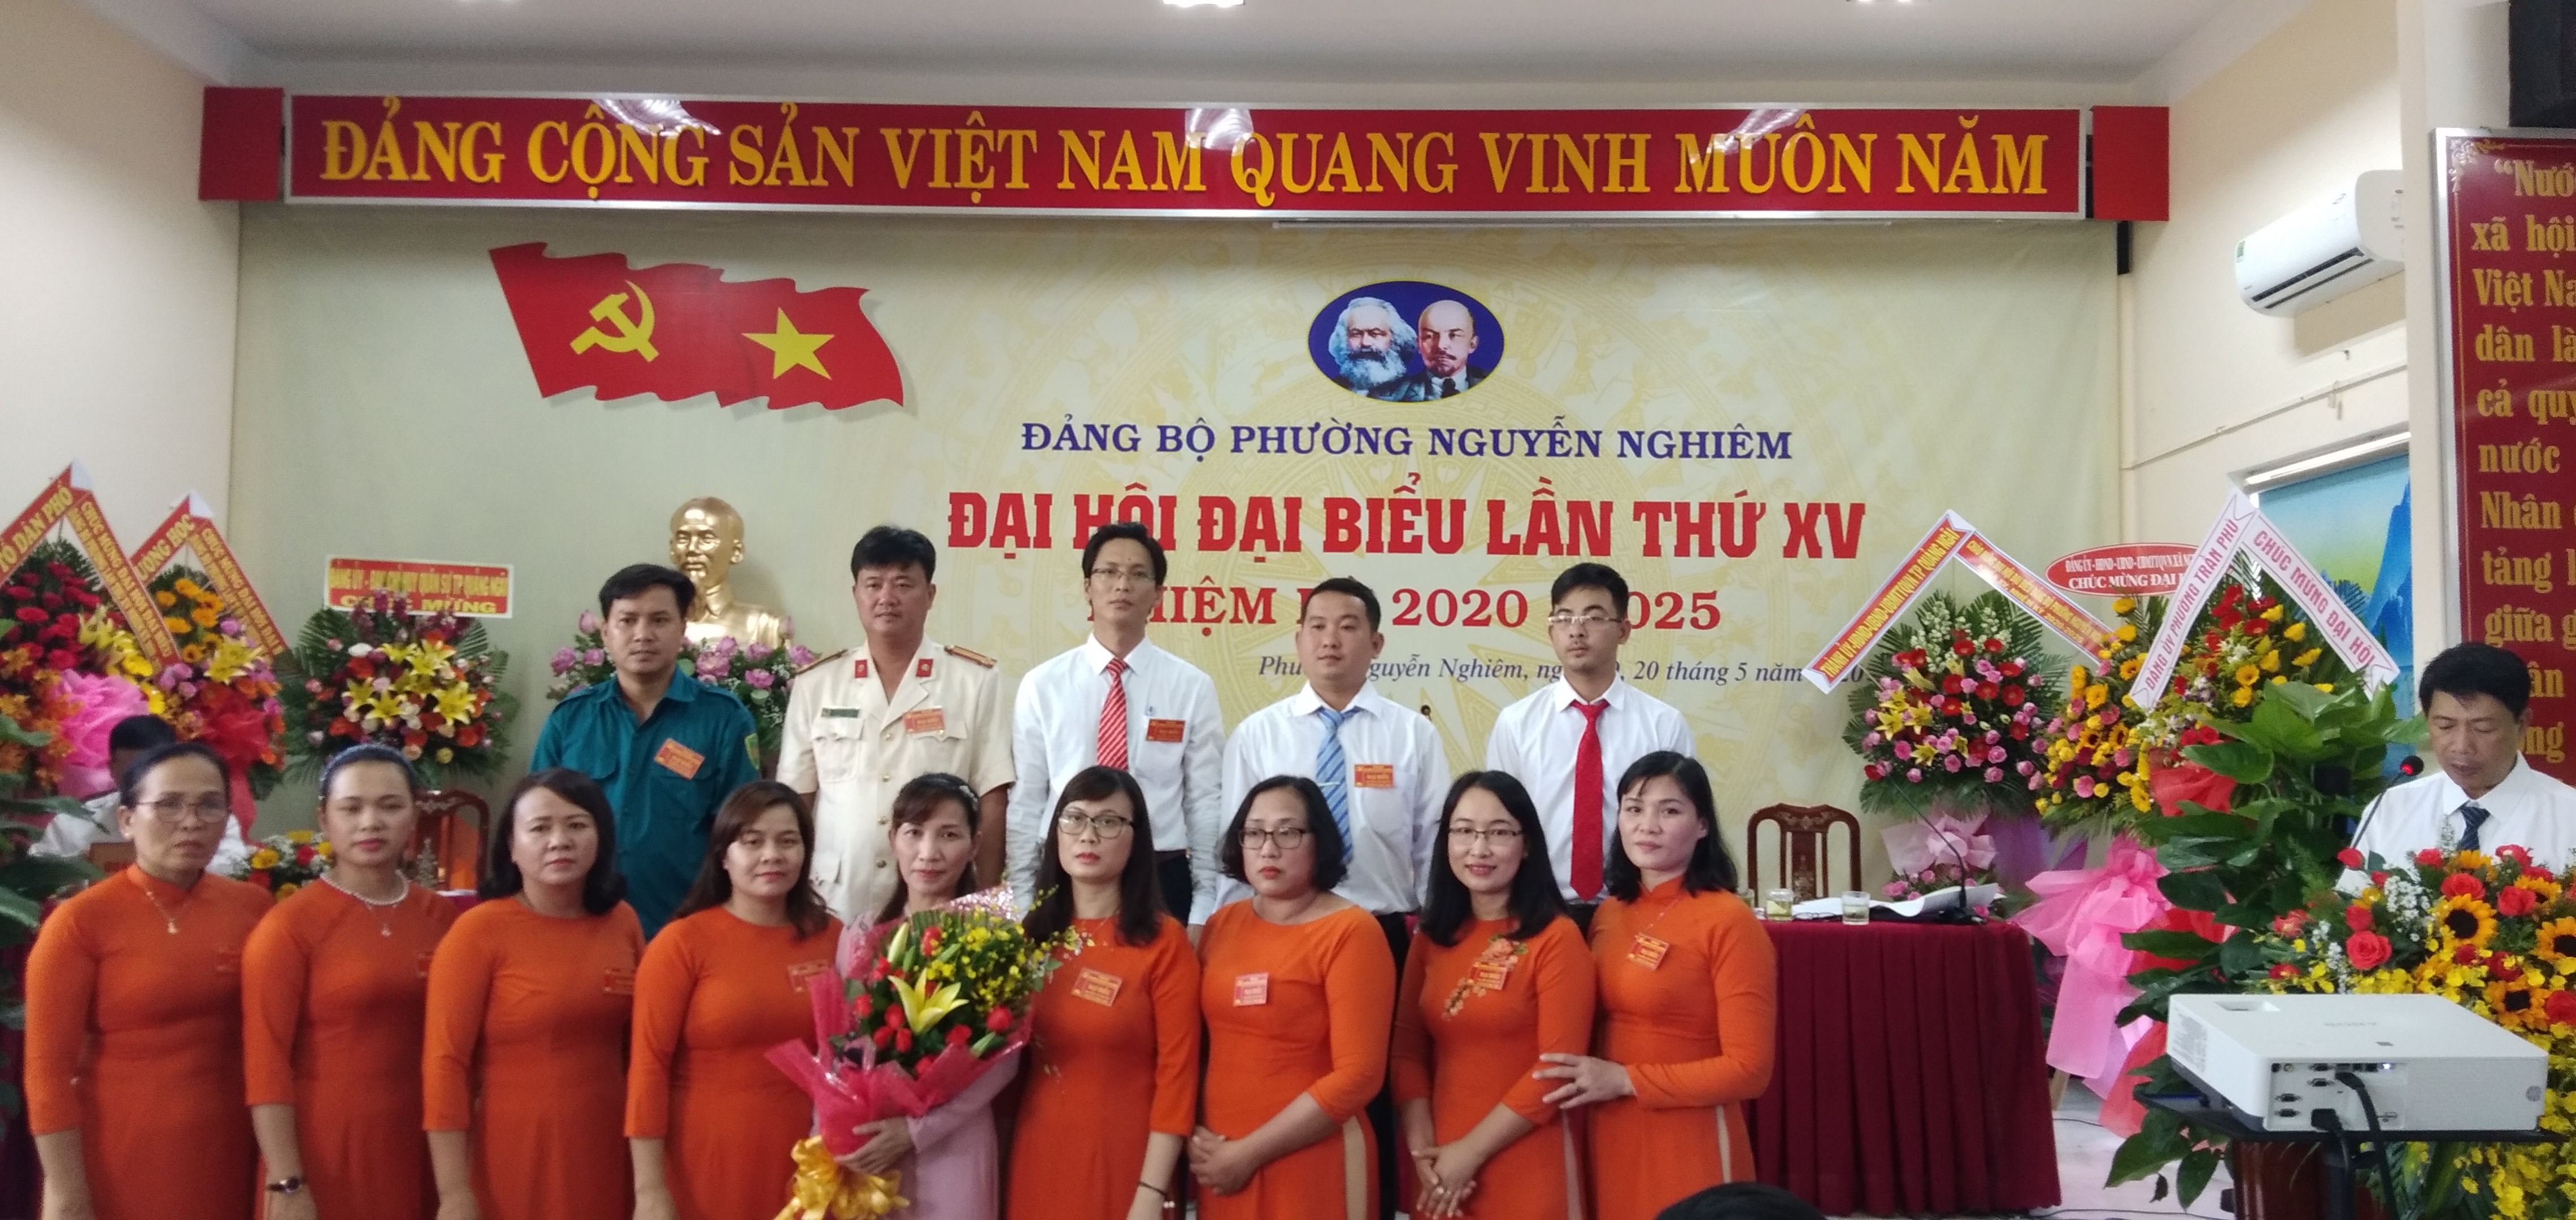 Đại hội đại biểu Đảng bộ phường Nguyễn Nghiêm lần thứ XV, nhiệm kỳ 2020 – 2025